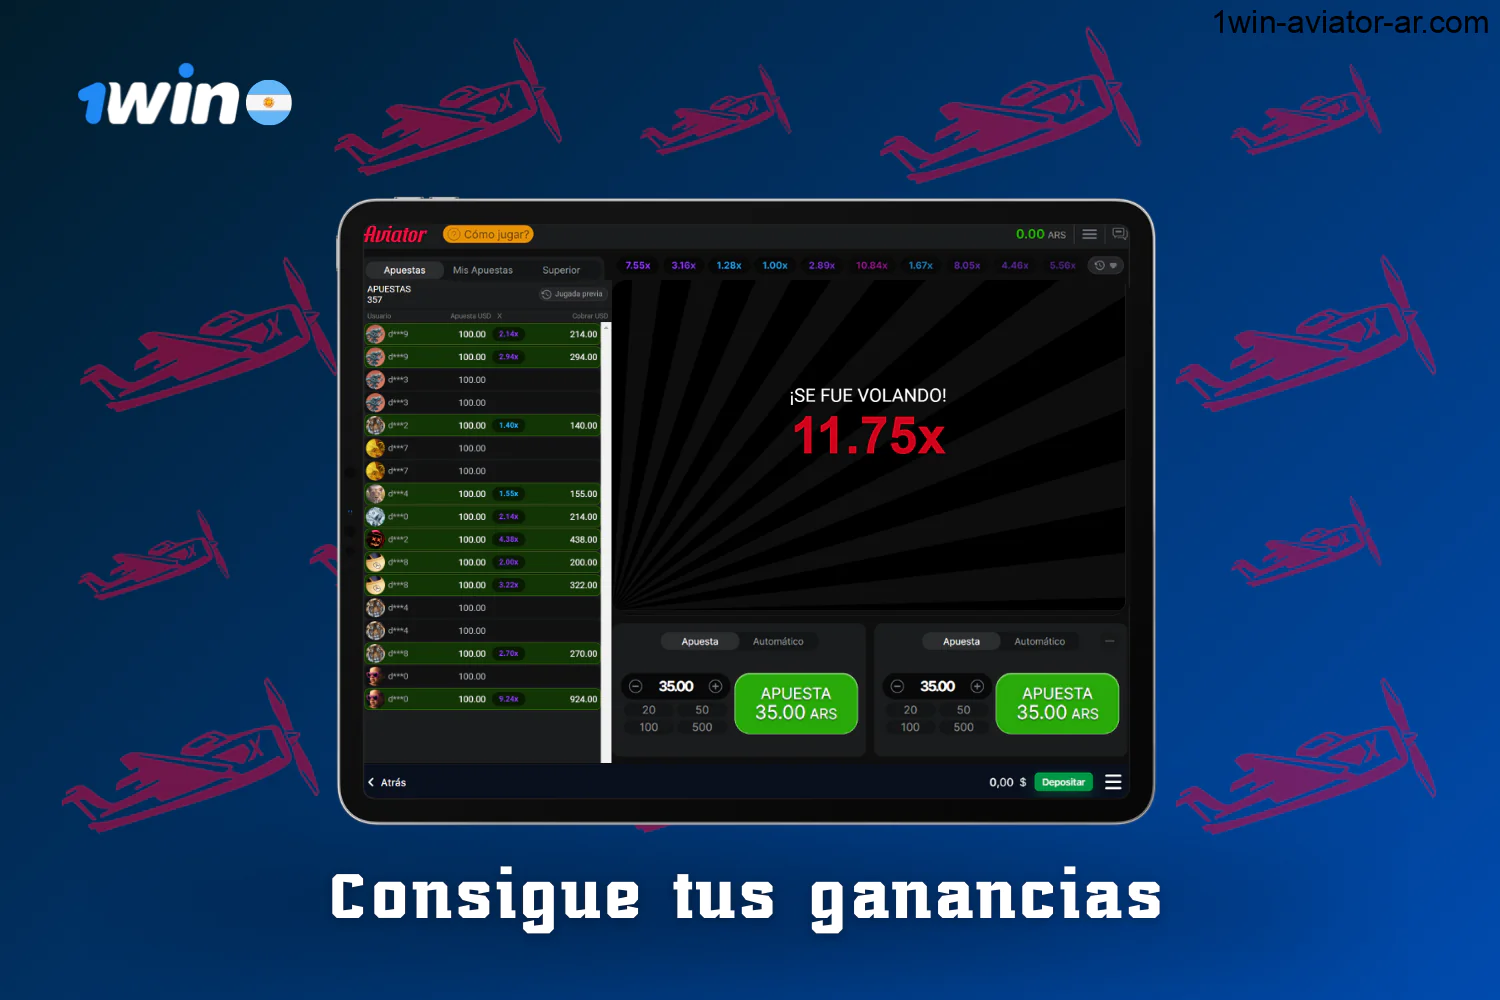 Los jugadores argentinos pueden cobrar sus ganancias jugando a 1win Aviator